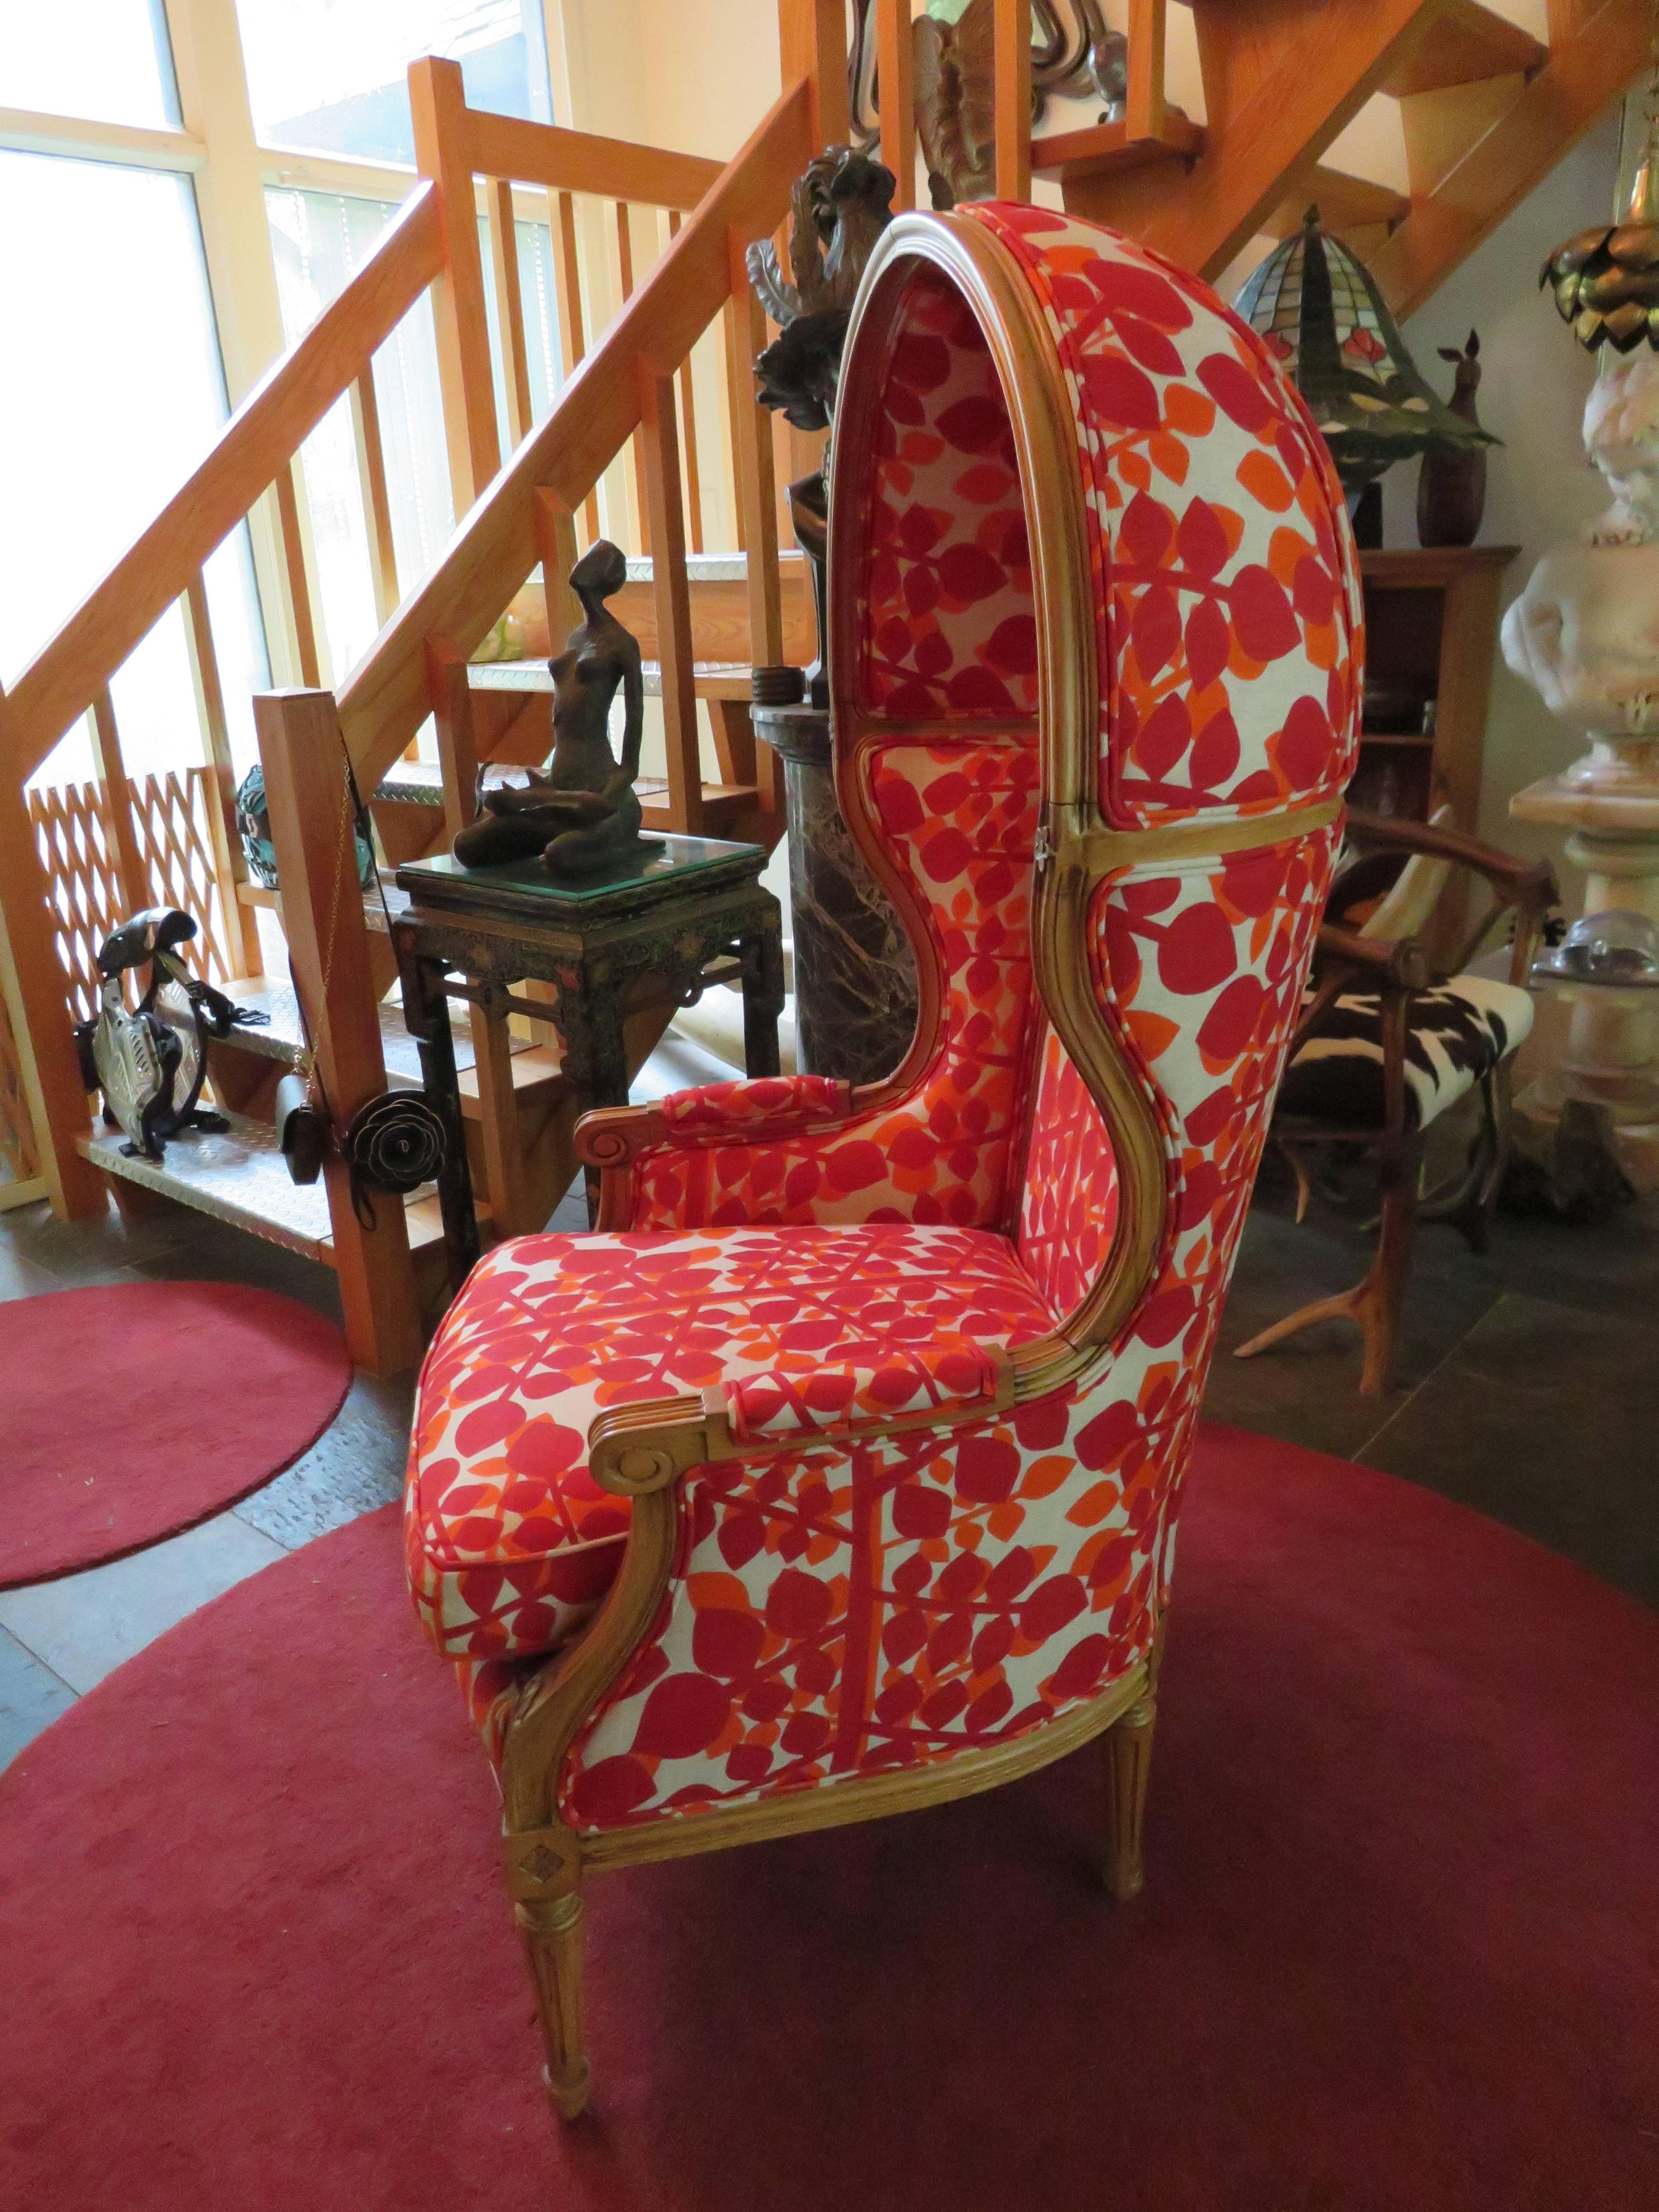 Magnifique chaise à baldaquin vintage sculptée française retapissée avec du lin vintage.  Nous avons fait des folies au niveau du revêtement lorsque nous avons décidé de donner à cette chaise classique une nouvelle tournure avec un lin vintage à